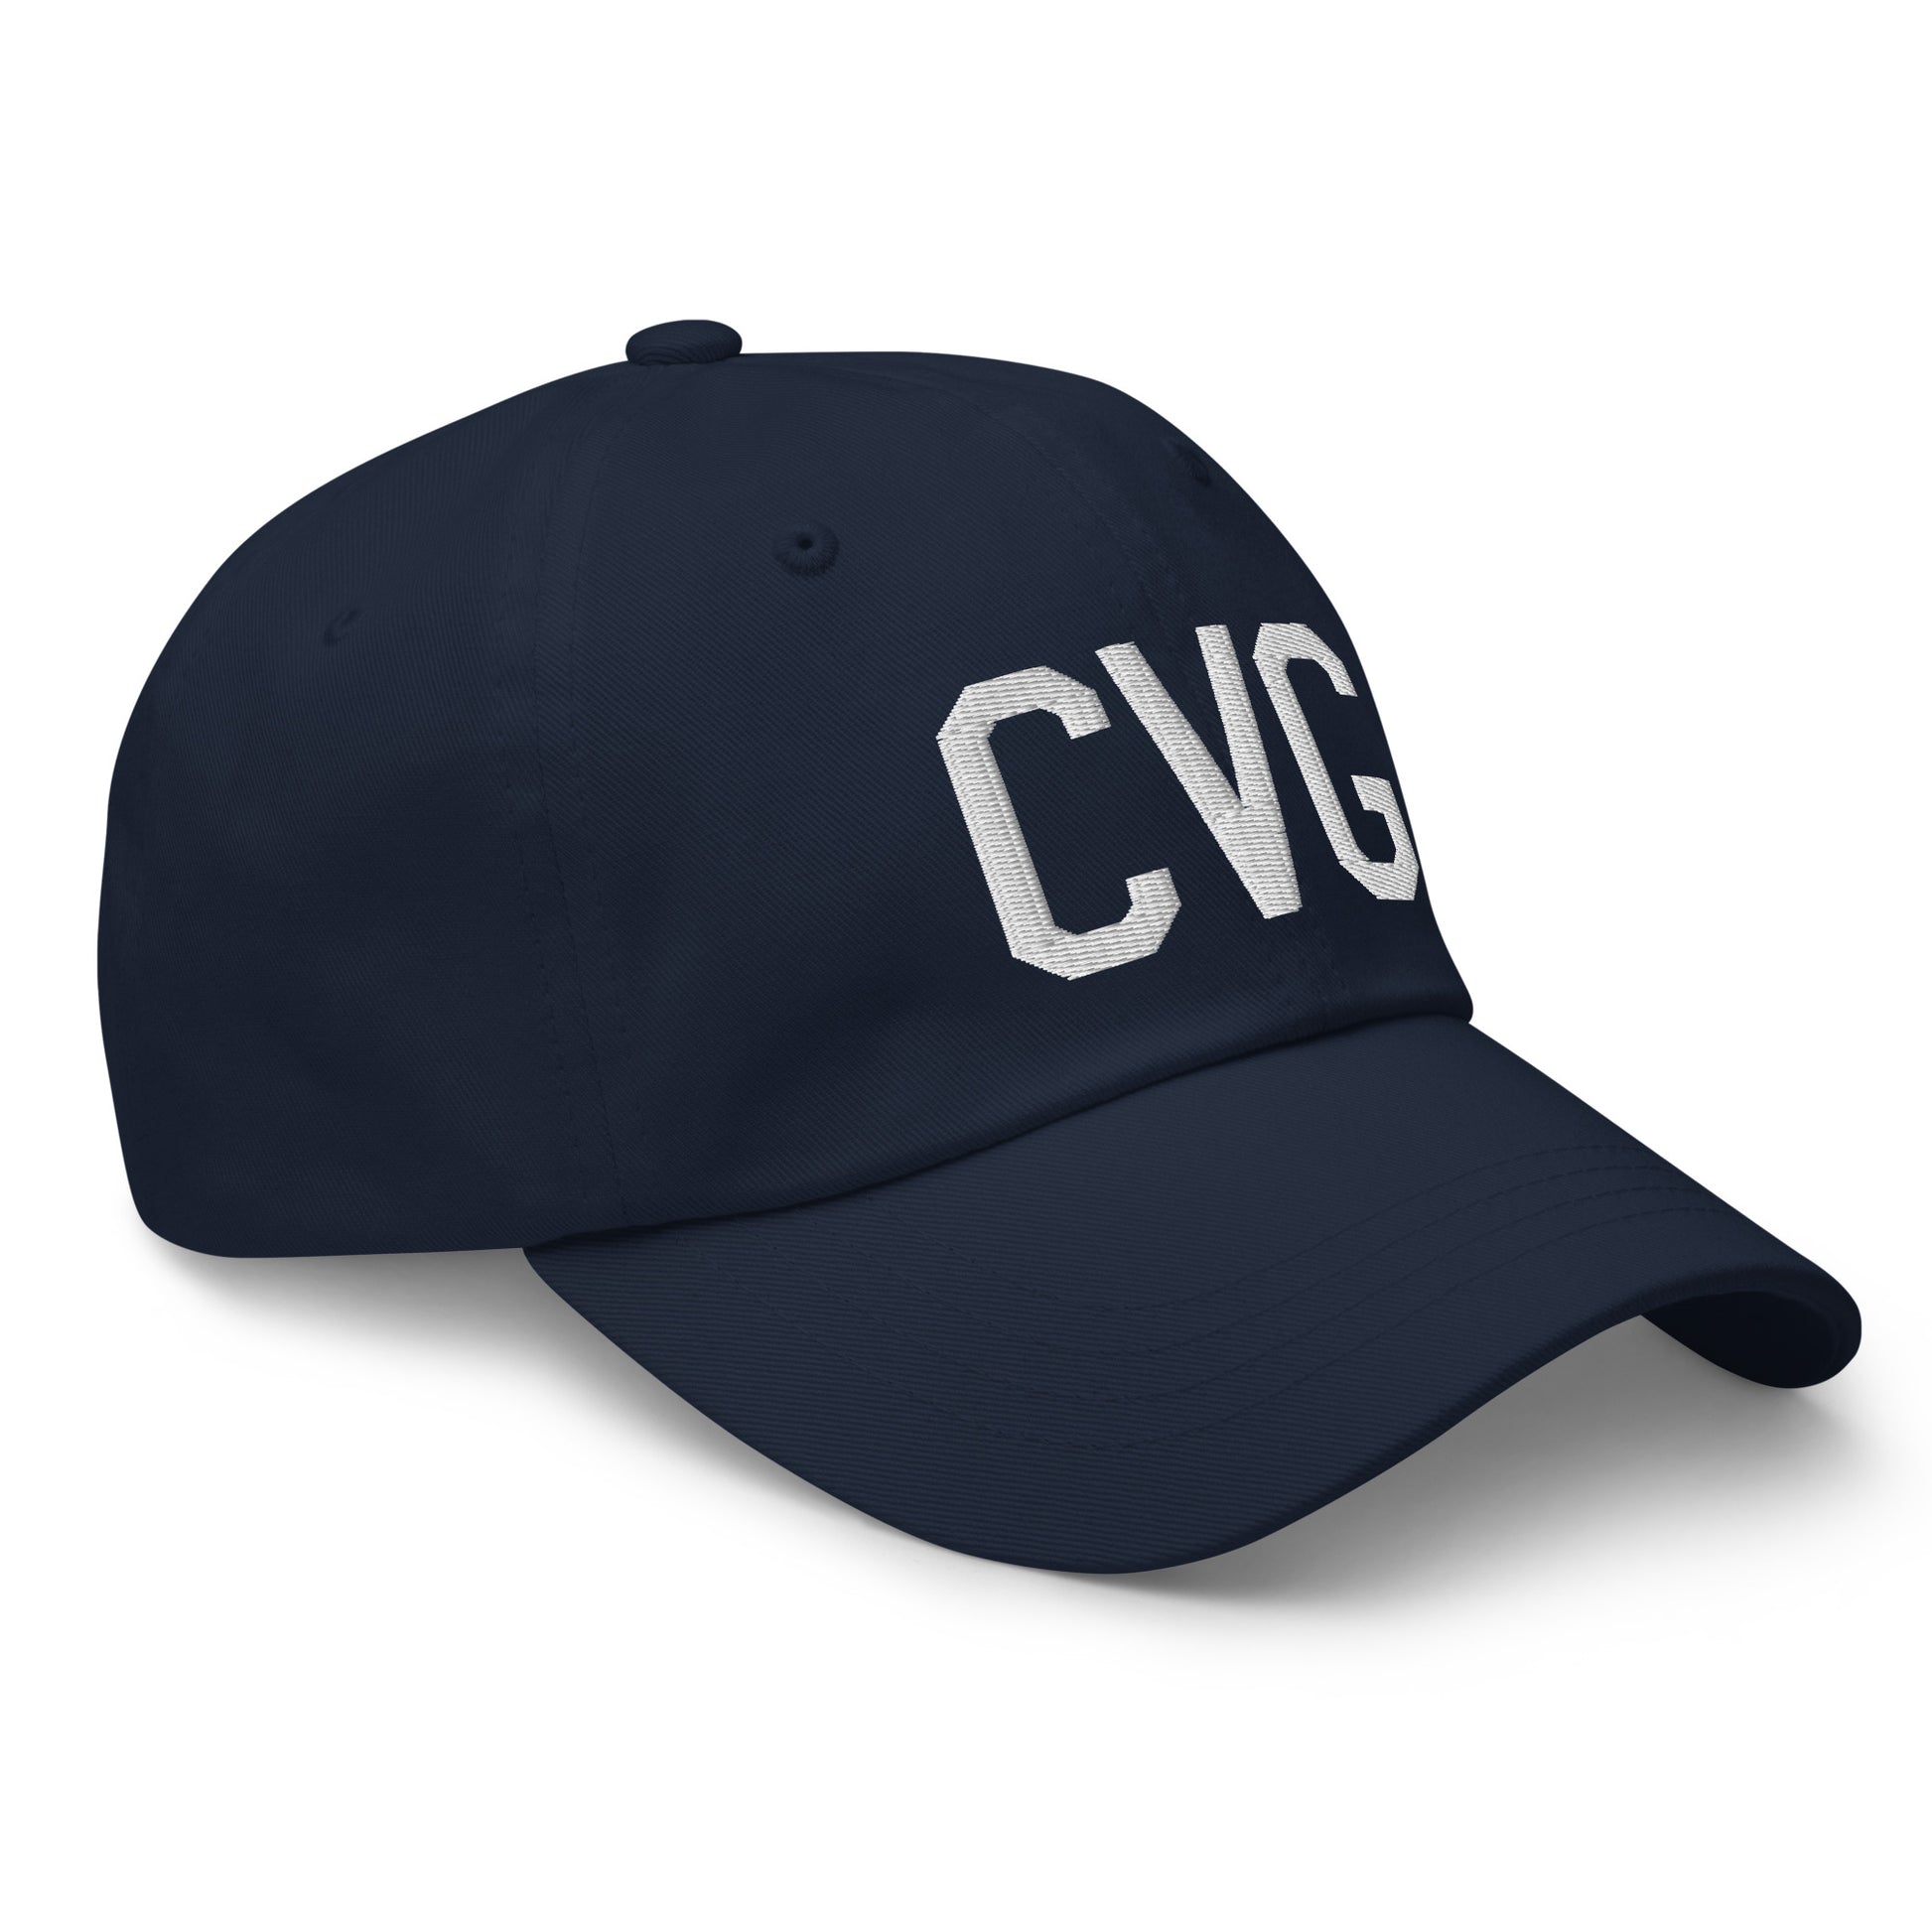 Airport Code Baseball Cap - White • CVG Cincinnati • YHM Designs - Image 17